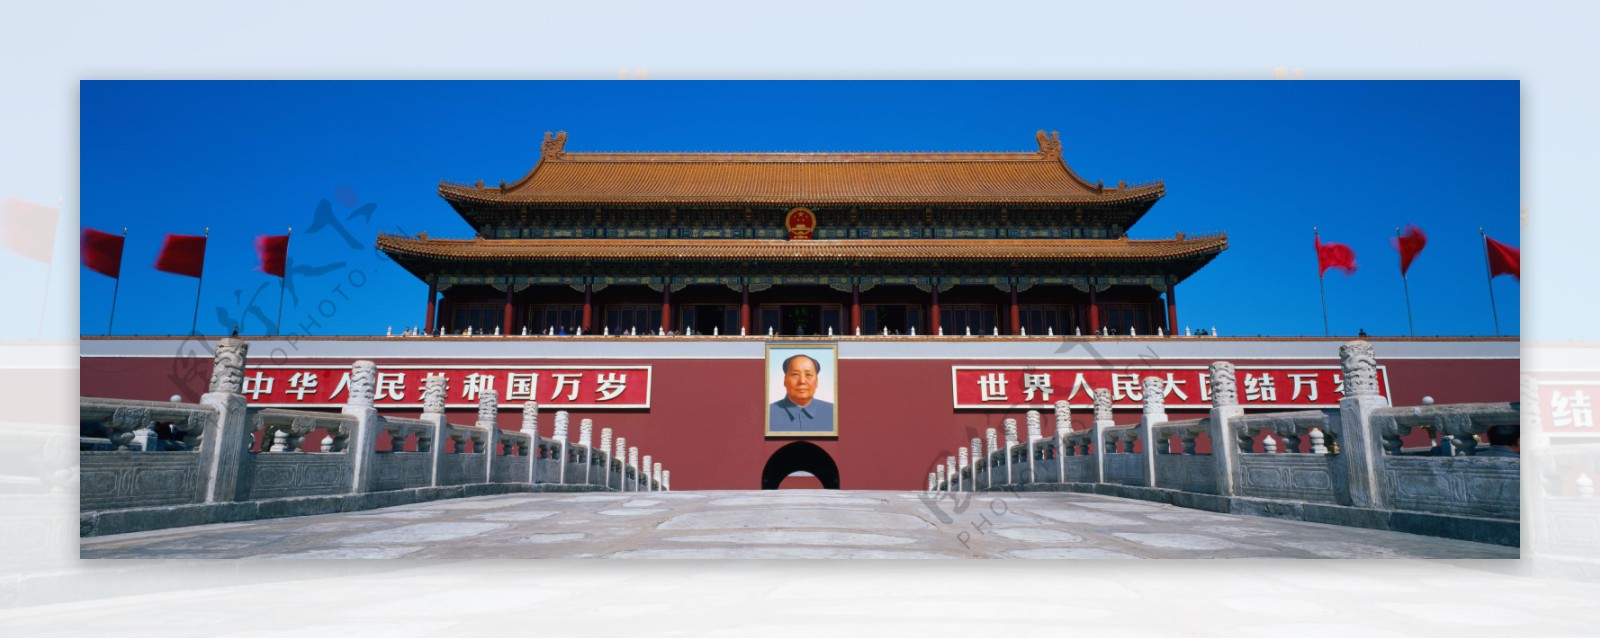 北京风光巨幅天安门图片